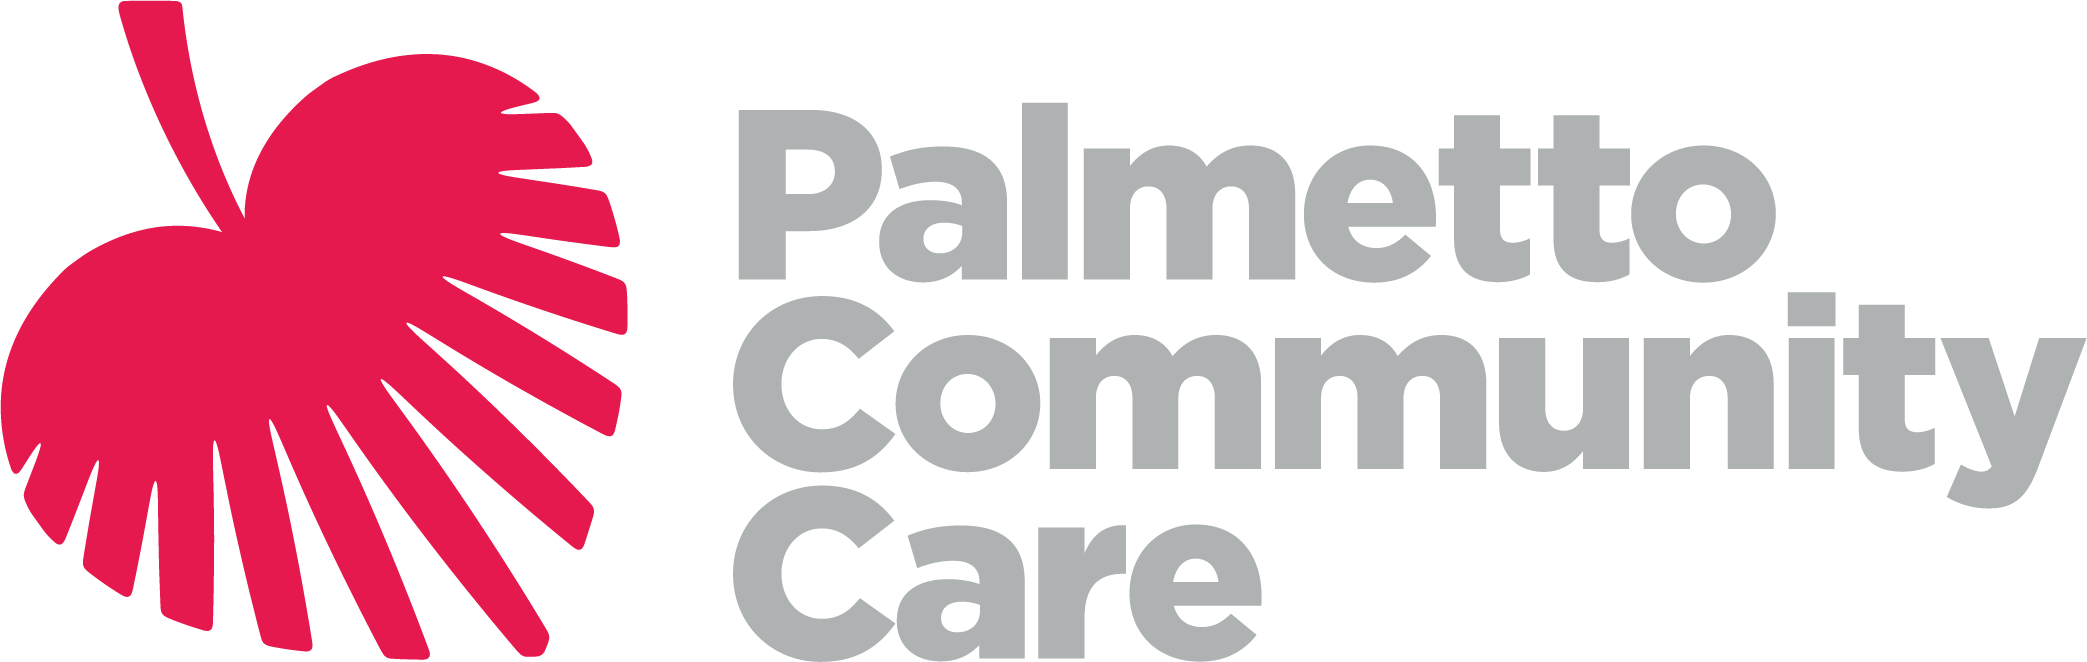 Palmetto Community Care